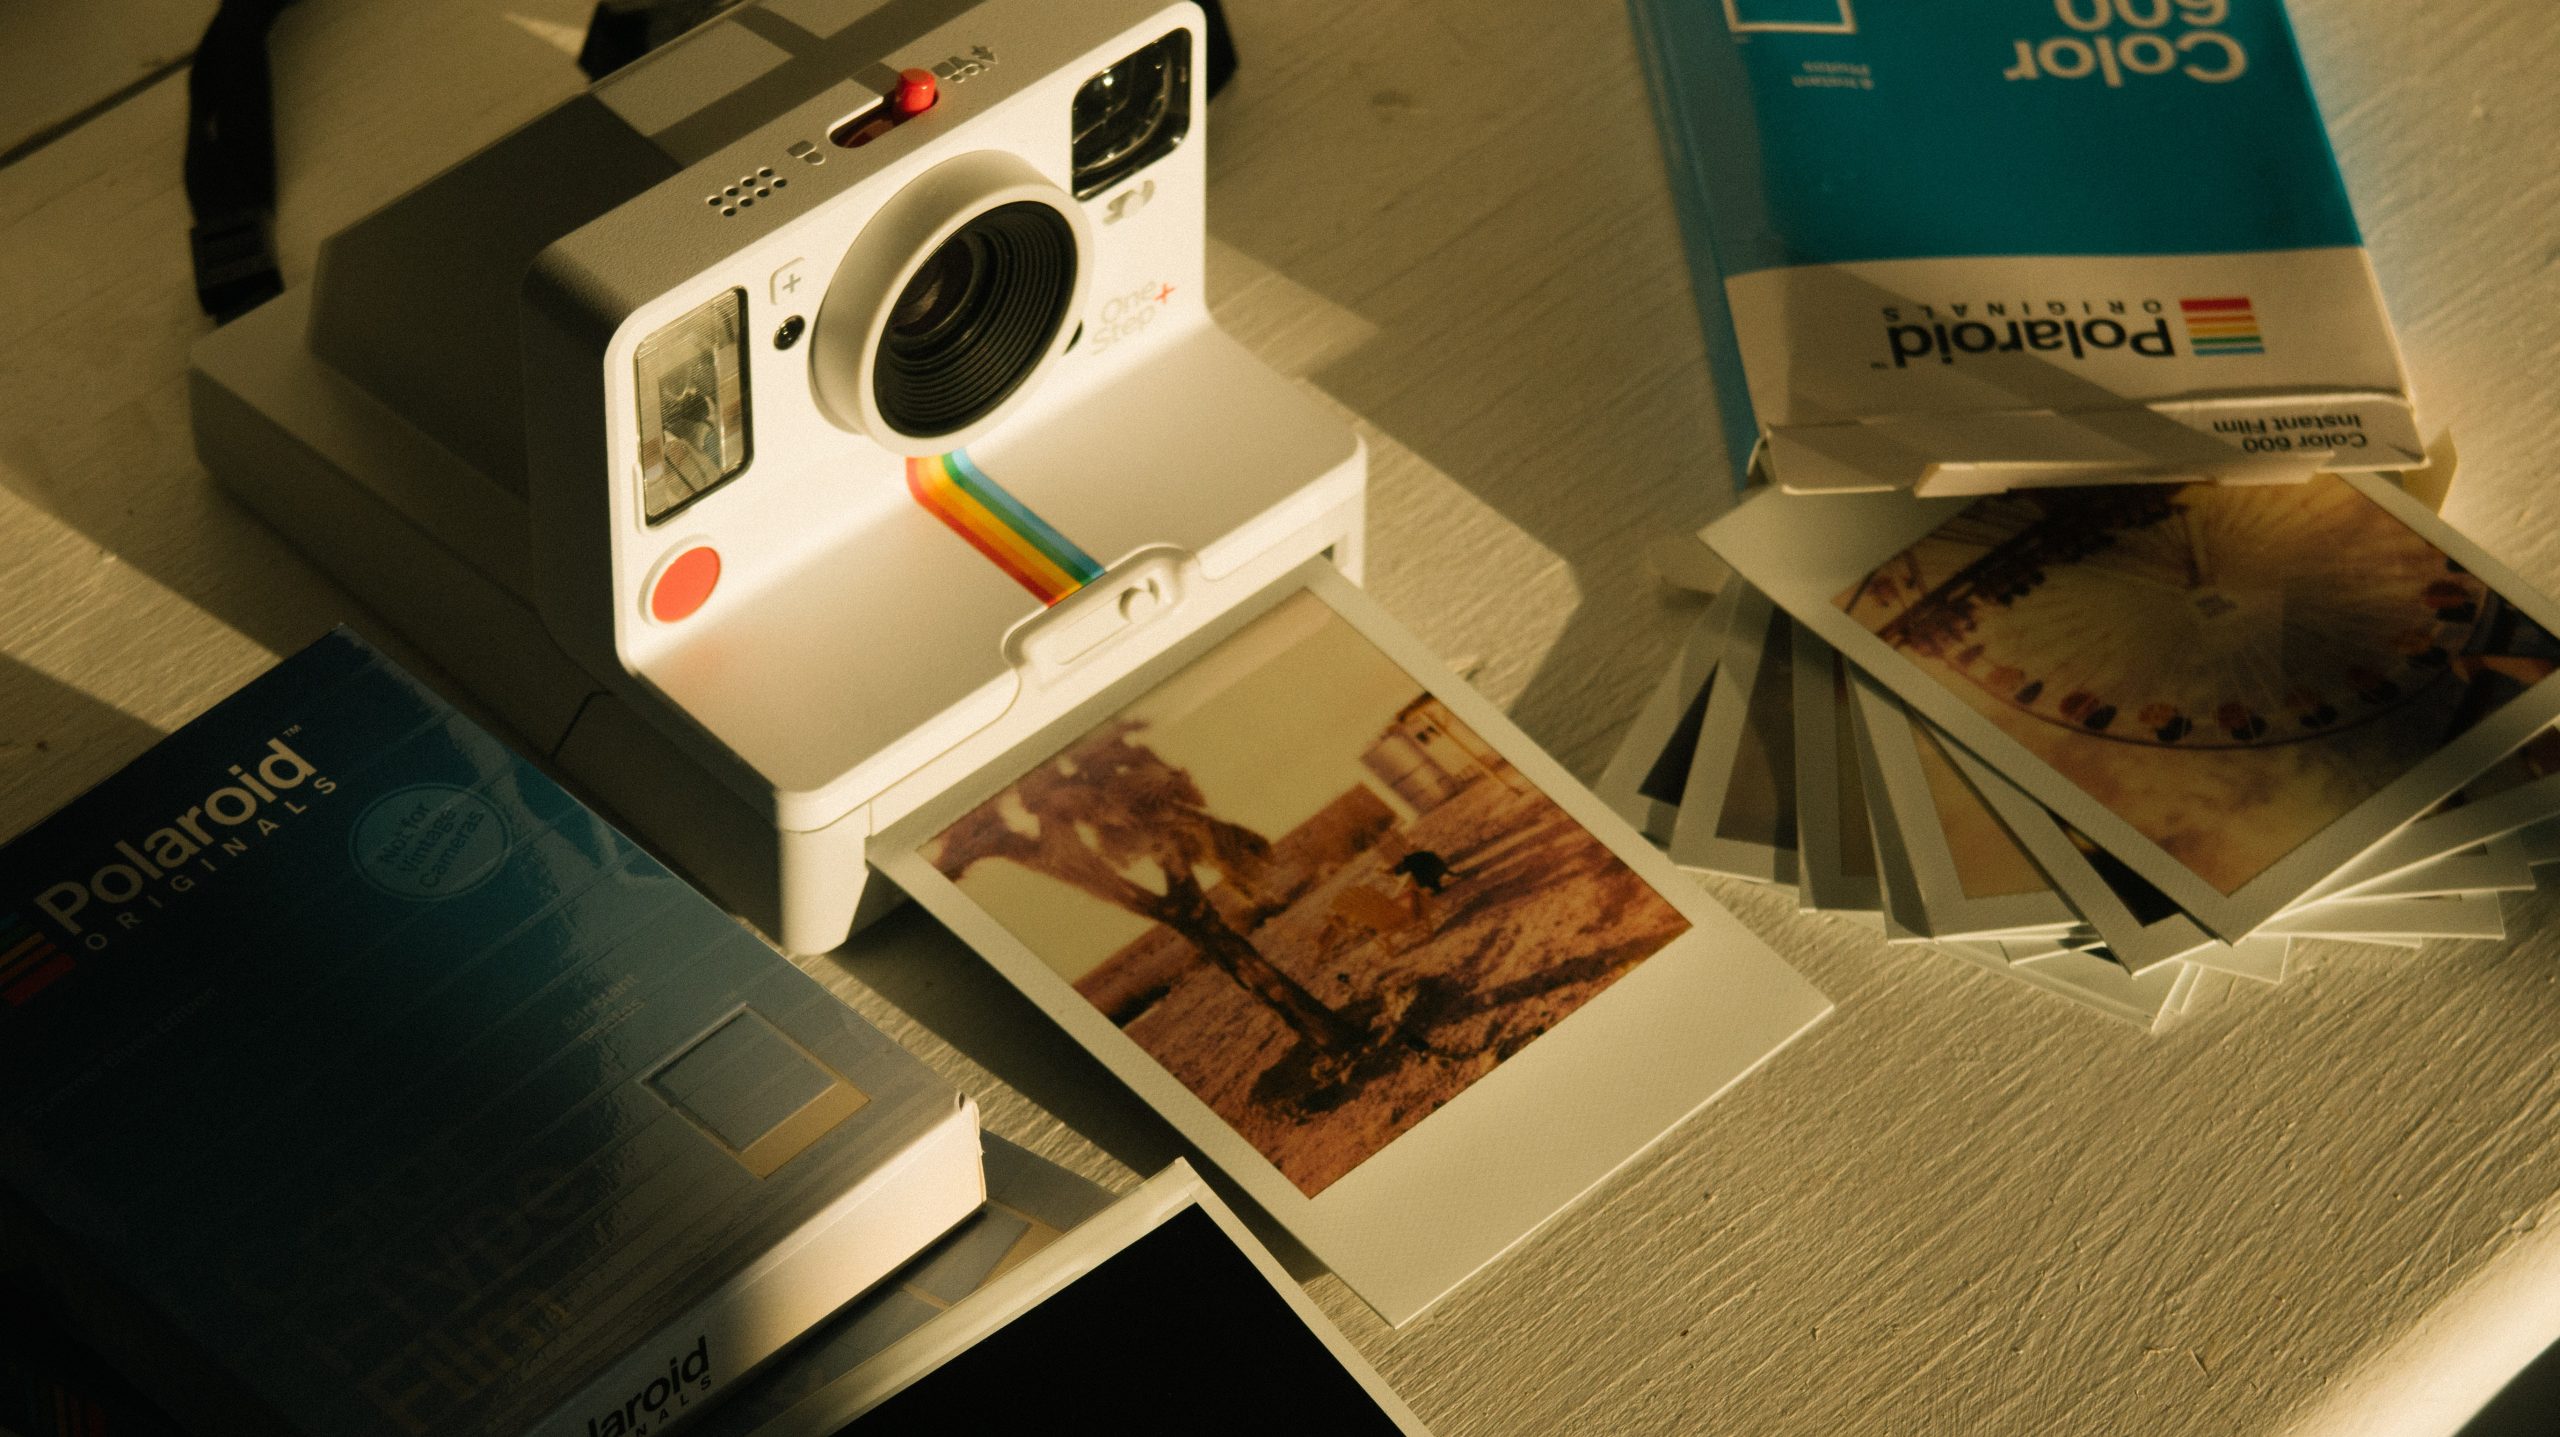 Polaroid corporation: Why did polaroid fail as a company?